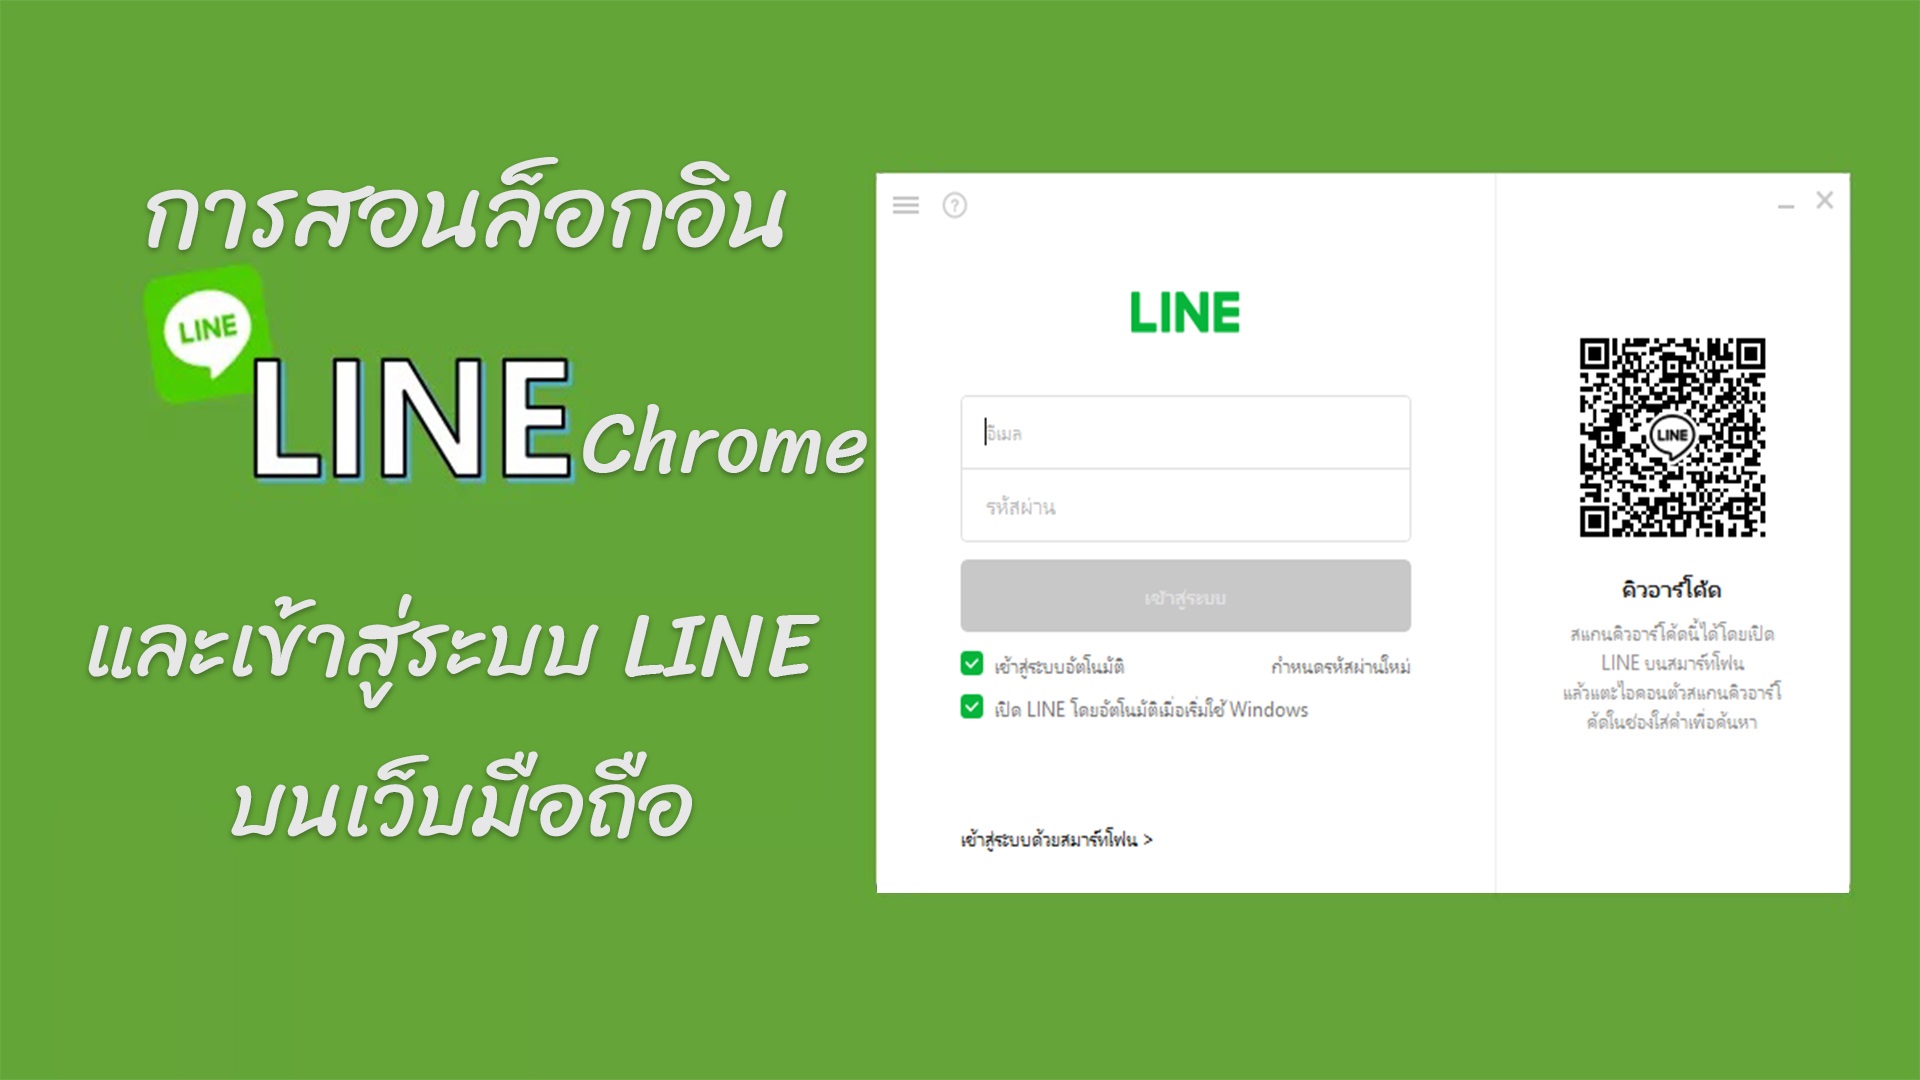 การสอนล็อกอิน Line Chrome และเข้าสู่ระบบ Line บนเว็บมือถือ  (ไม่ต้องติดตั้งโปรแกรม)